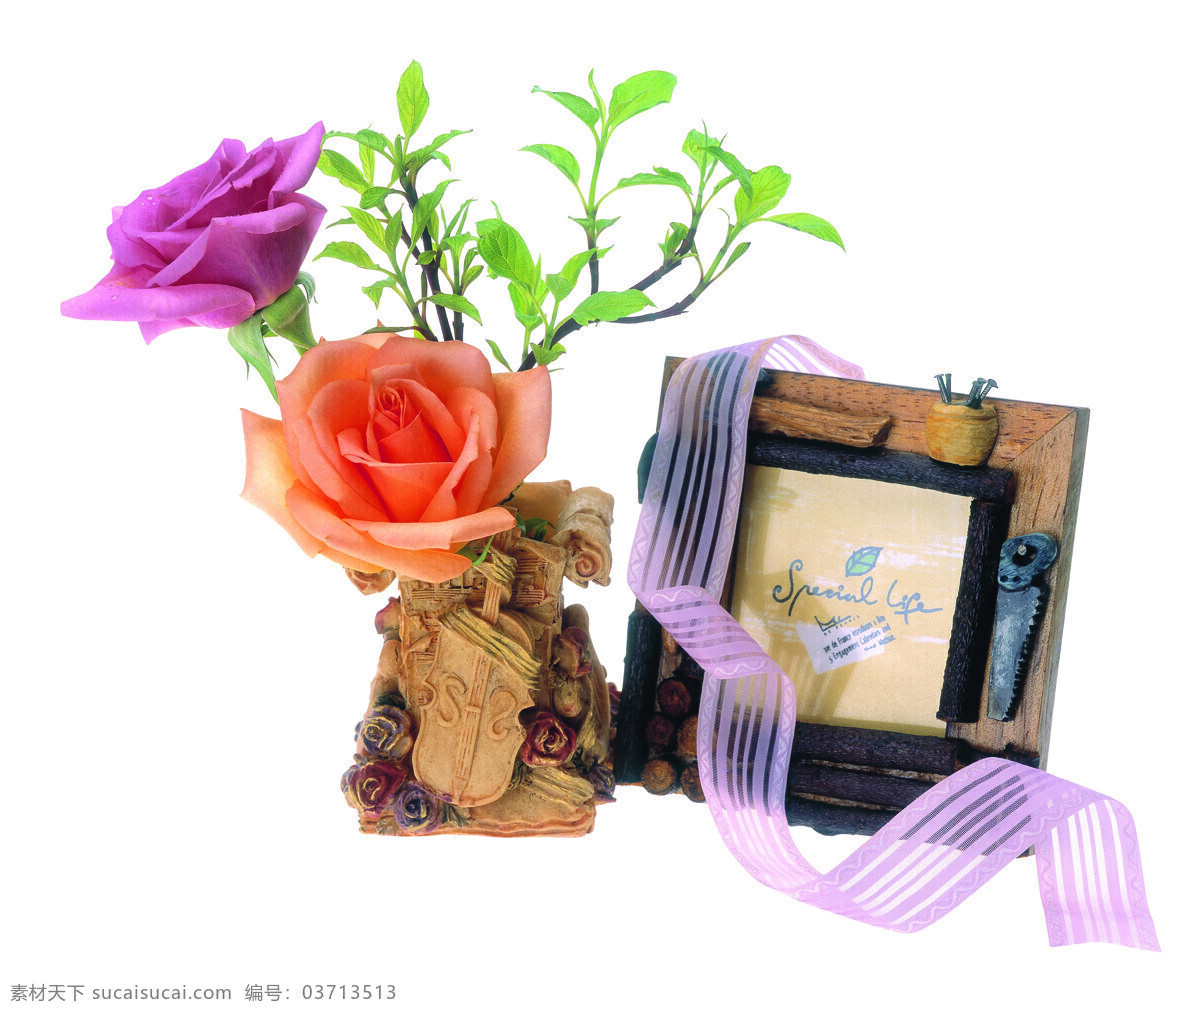 美好回忆 鲜花 植物 相框 照片 记忆 彩带 文化艺术